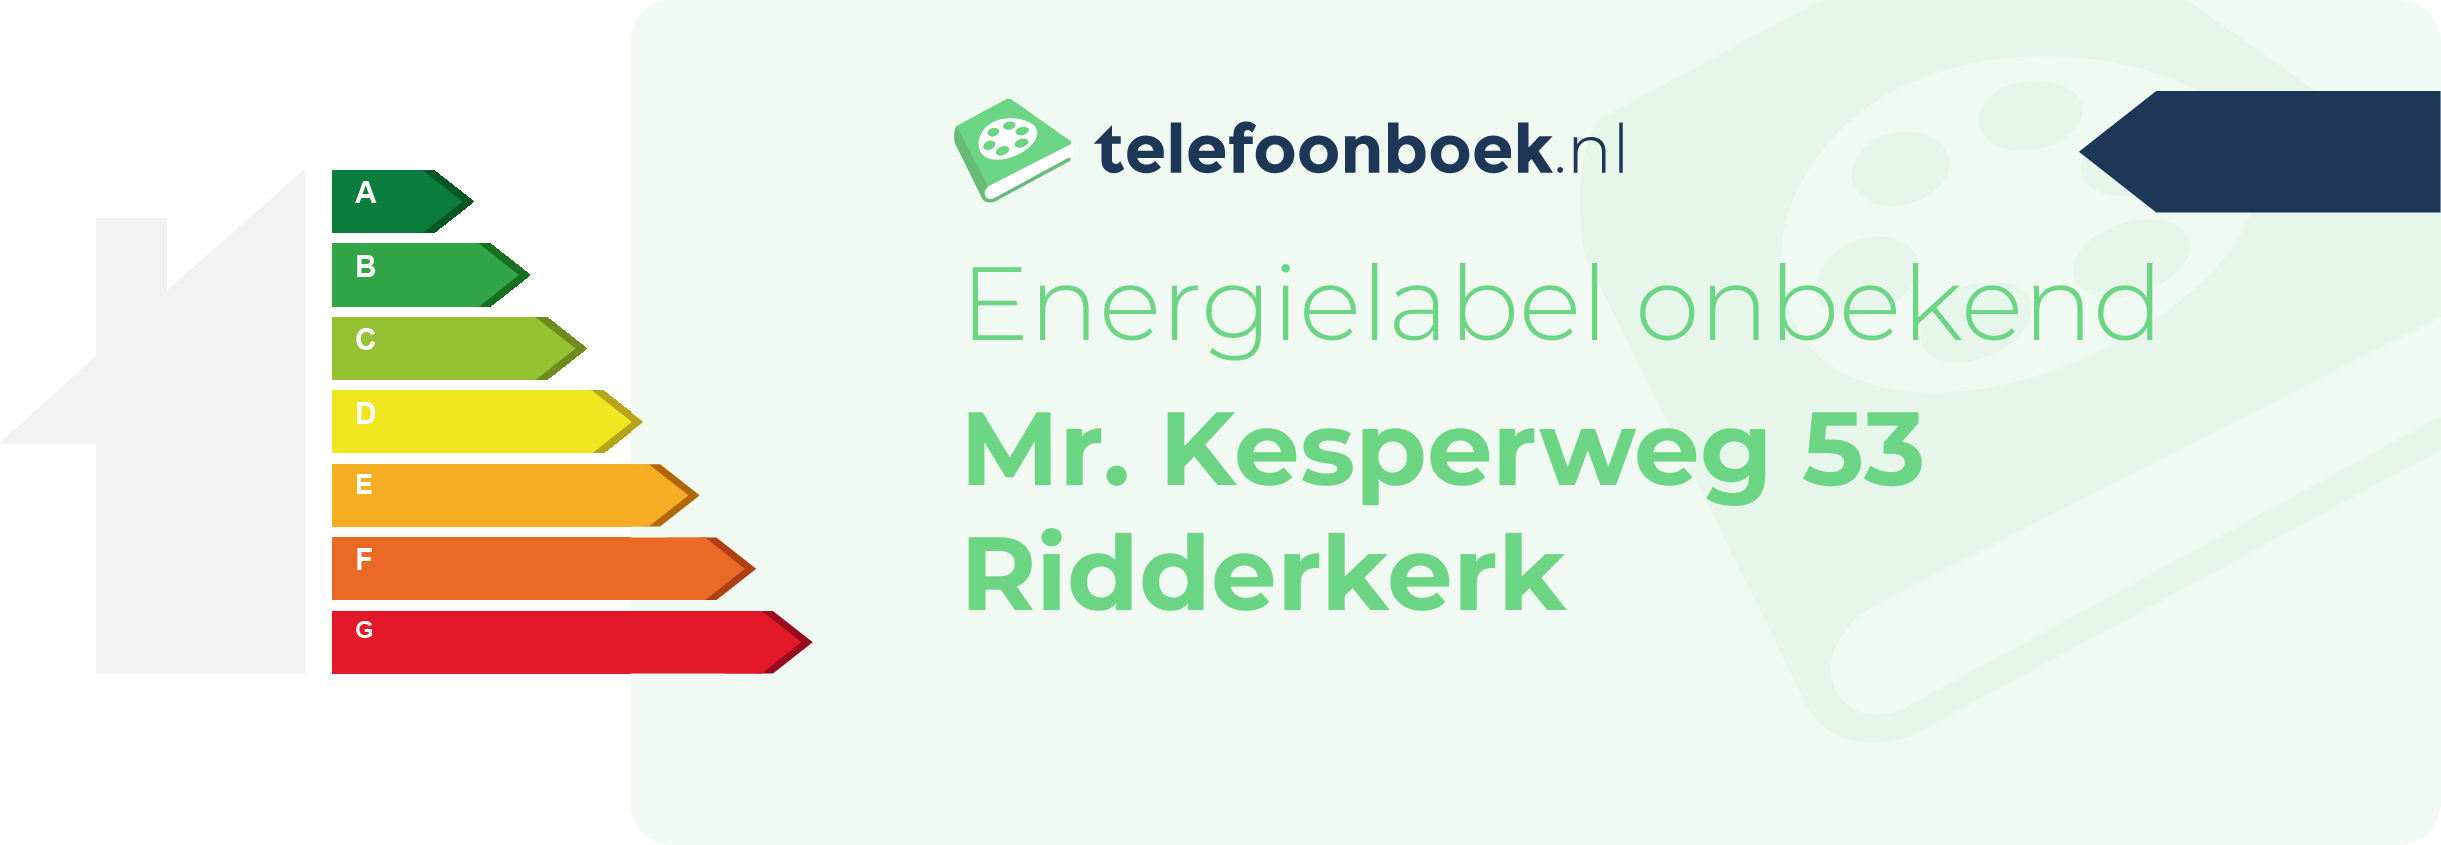 Energielabel Mr. Kesperweg 53 Ridderkerk